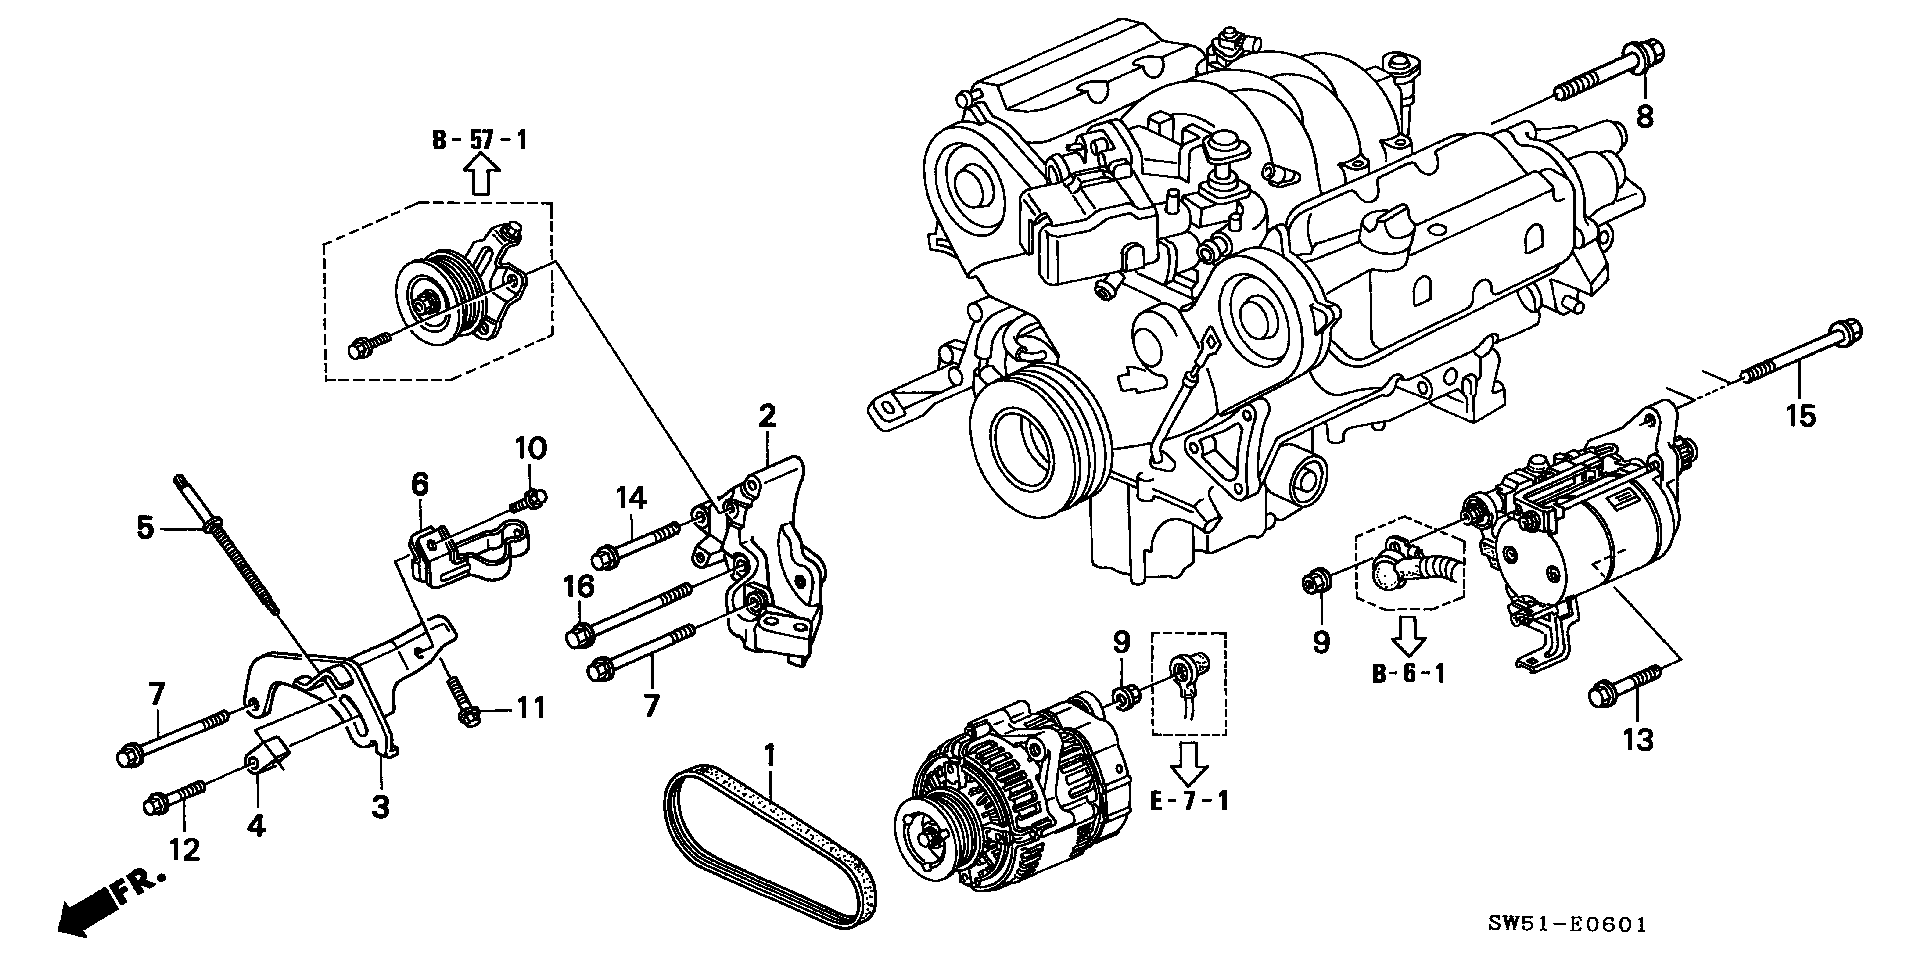 A.C. GENERATOR BRACKET (V6)